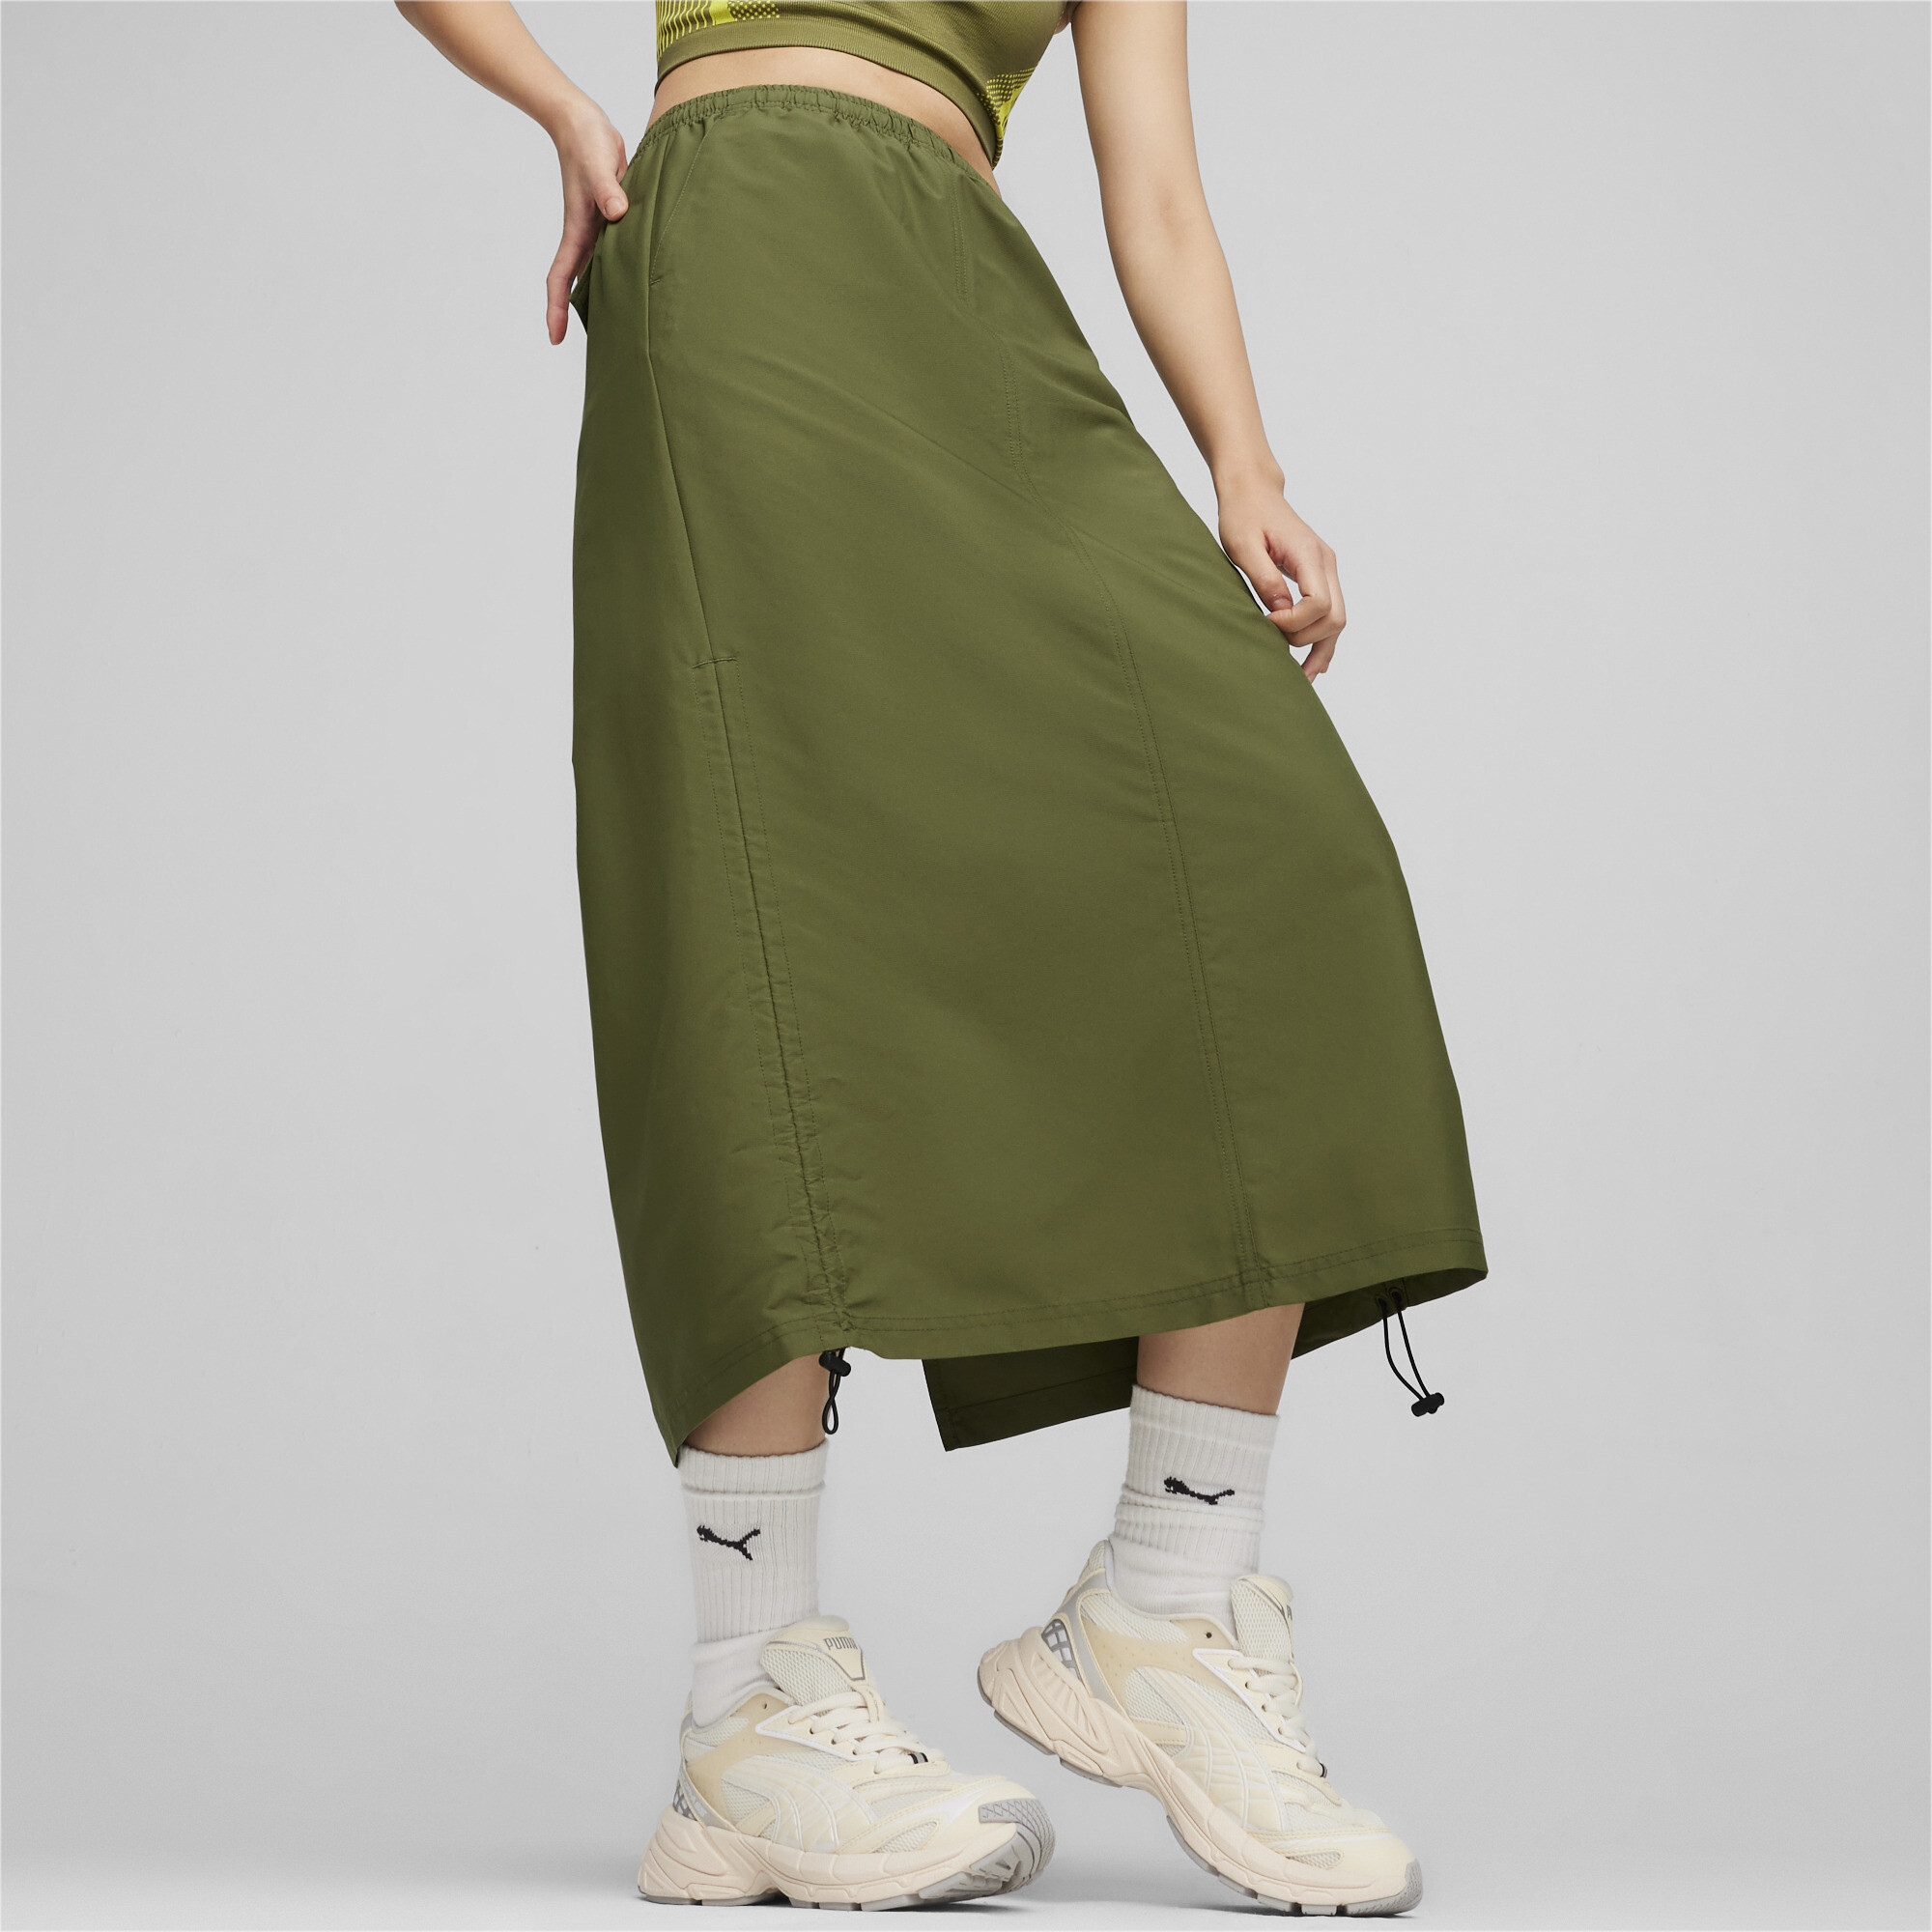 Women's PUMA DARE TO Midi Woven Skirt In Green, Size Small